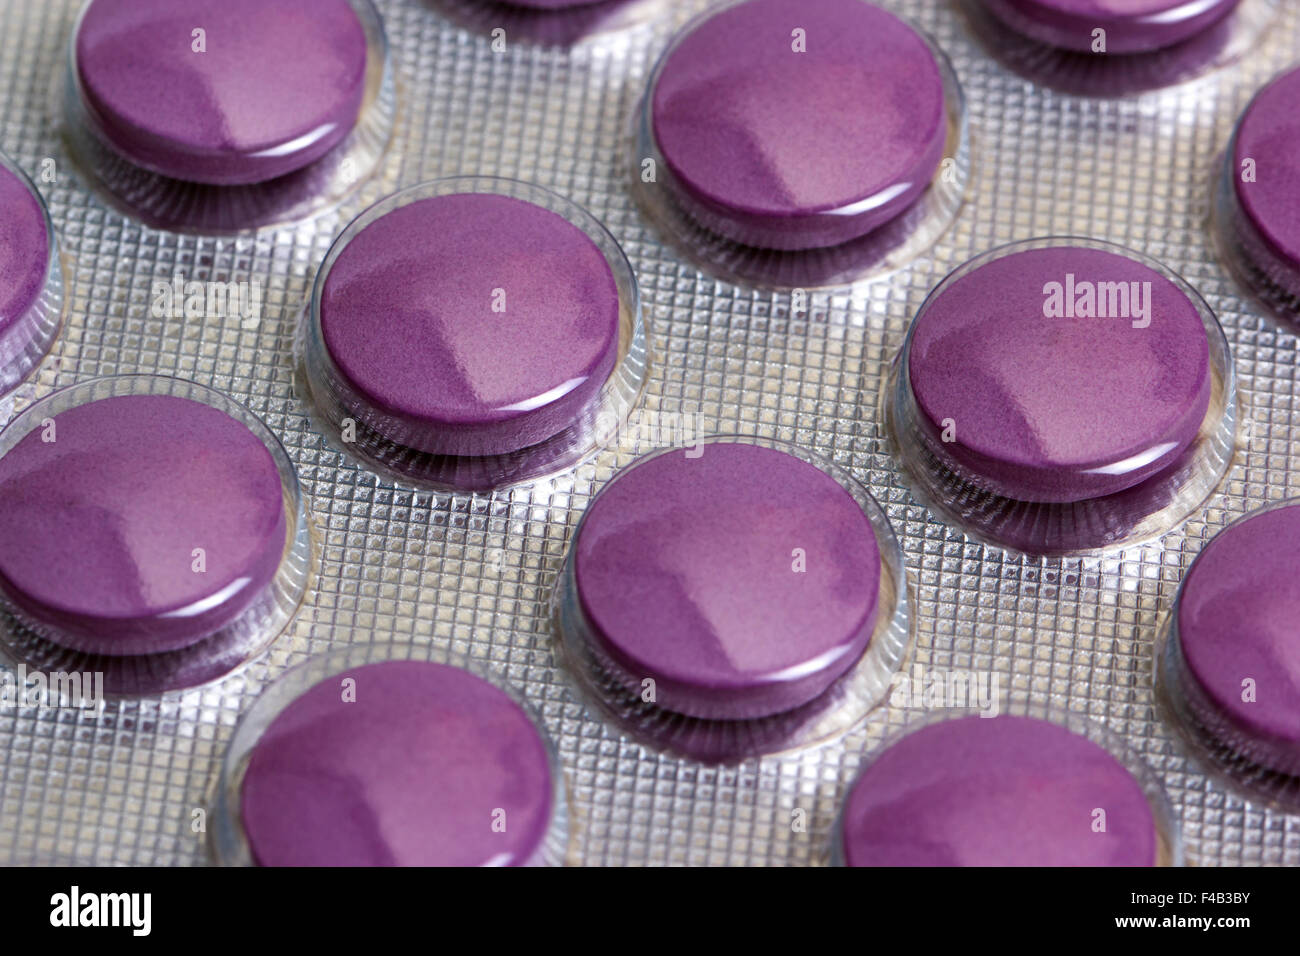 Как называется разноцветные таблетки. Сиреневые таблетки. Фиолетовые таблетки. Таблетки фиолетового цвета. Таблетки сиреневого цвета.